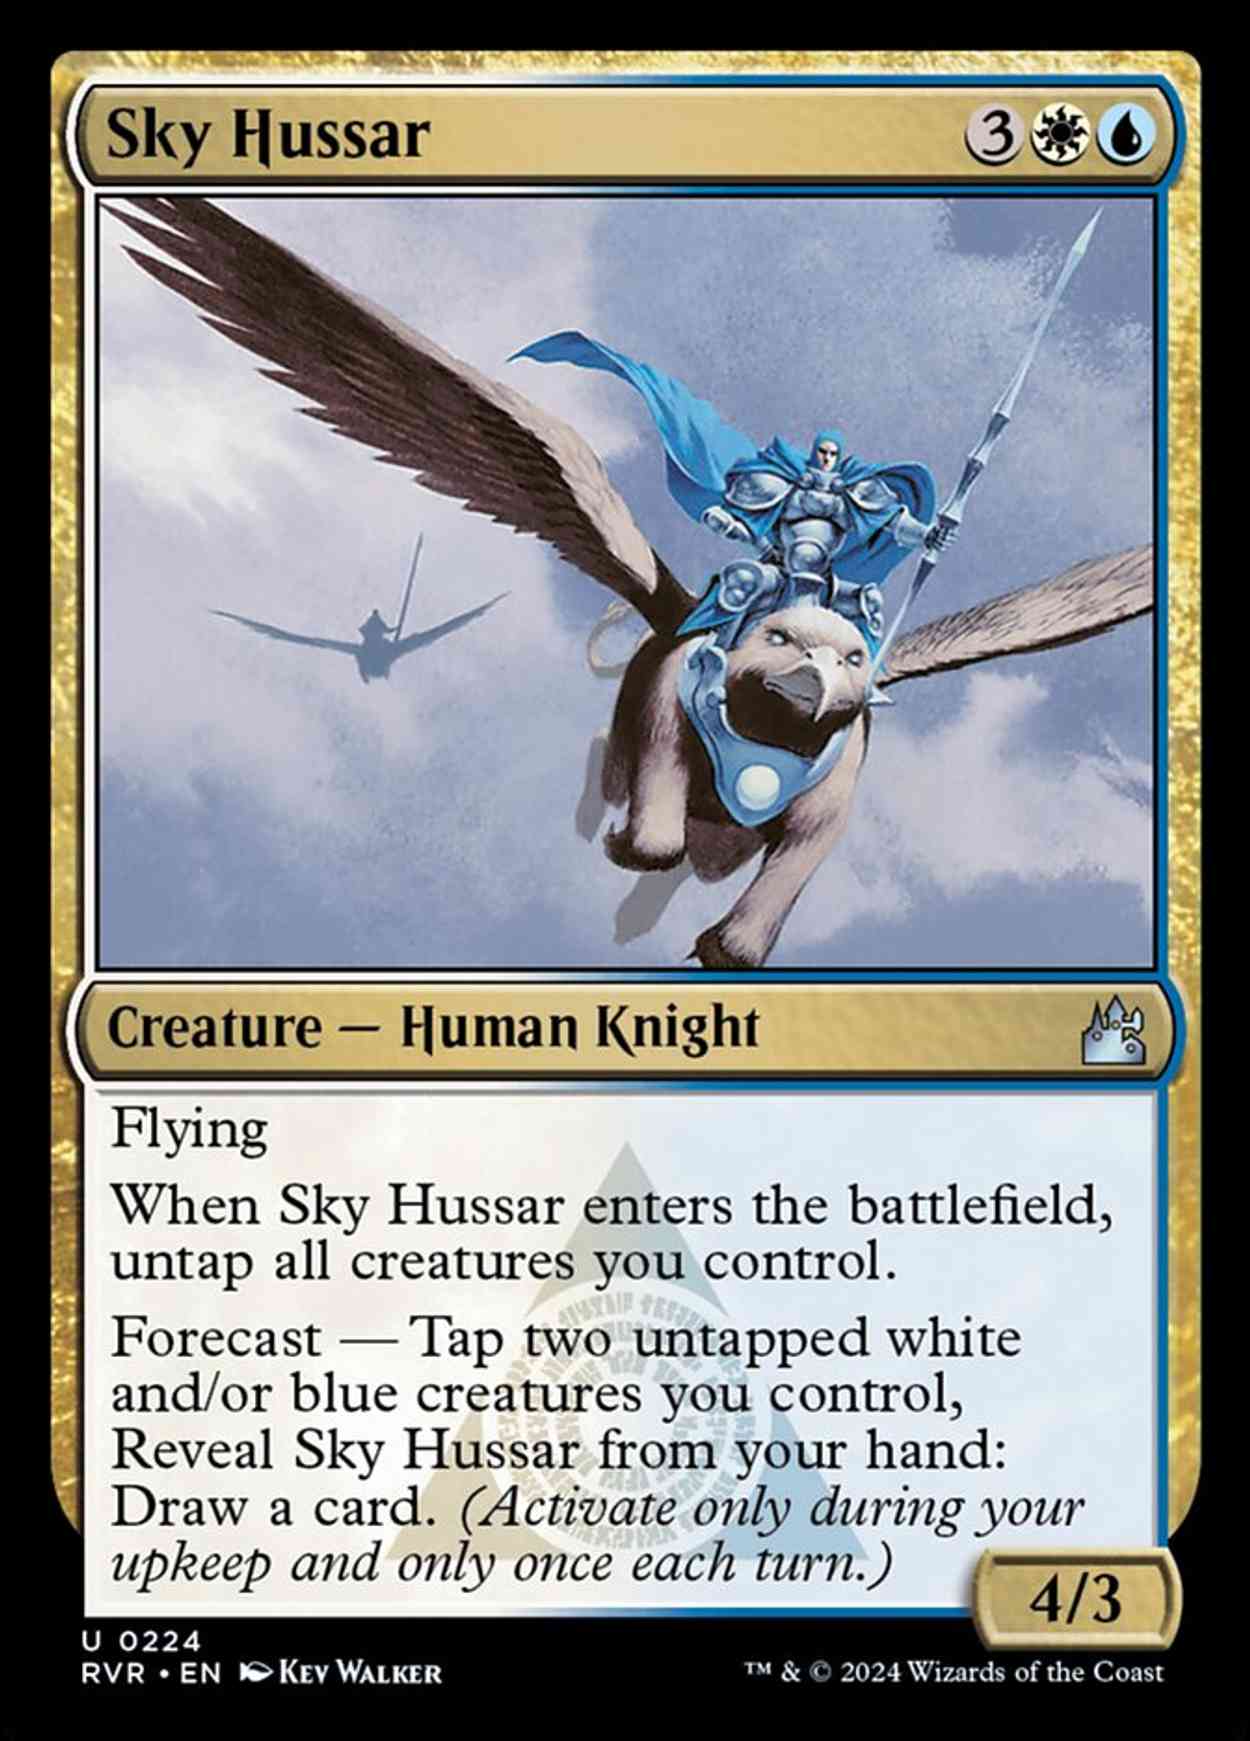 Sky Hussar magic card front